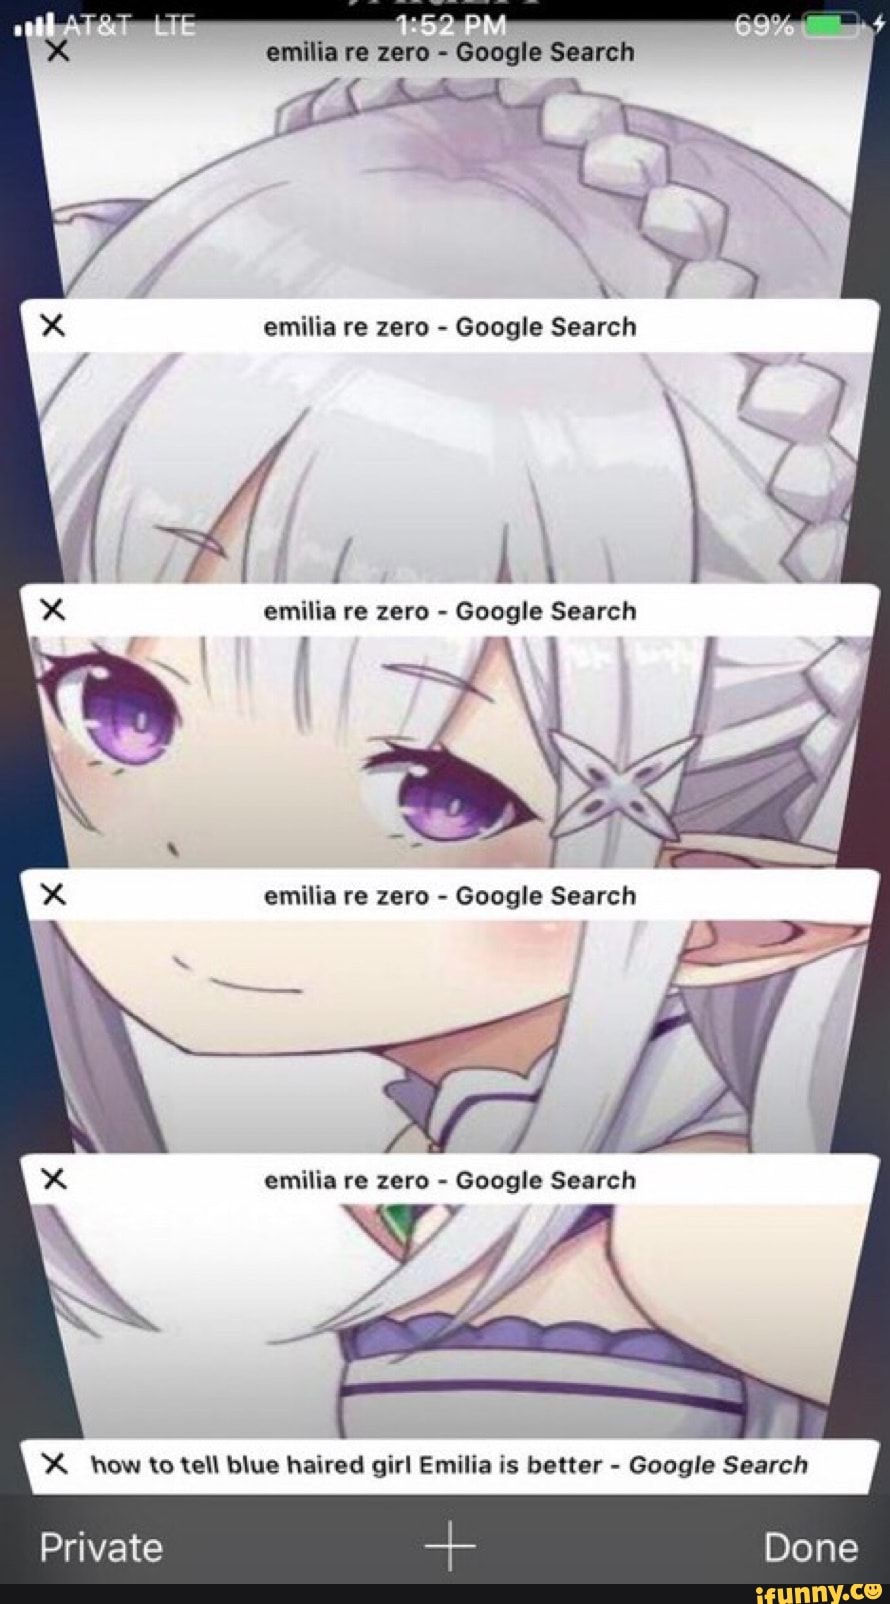 Emilia Re Zero Google Search Emilia Re Zero Google Search Emilia Re Zero Google Search X How U Tell Blue Haired Girl Emilia Is Better Google Search Ifunny